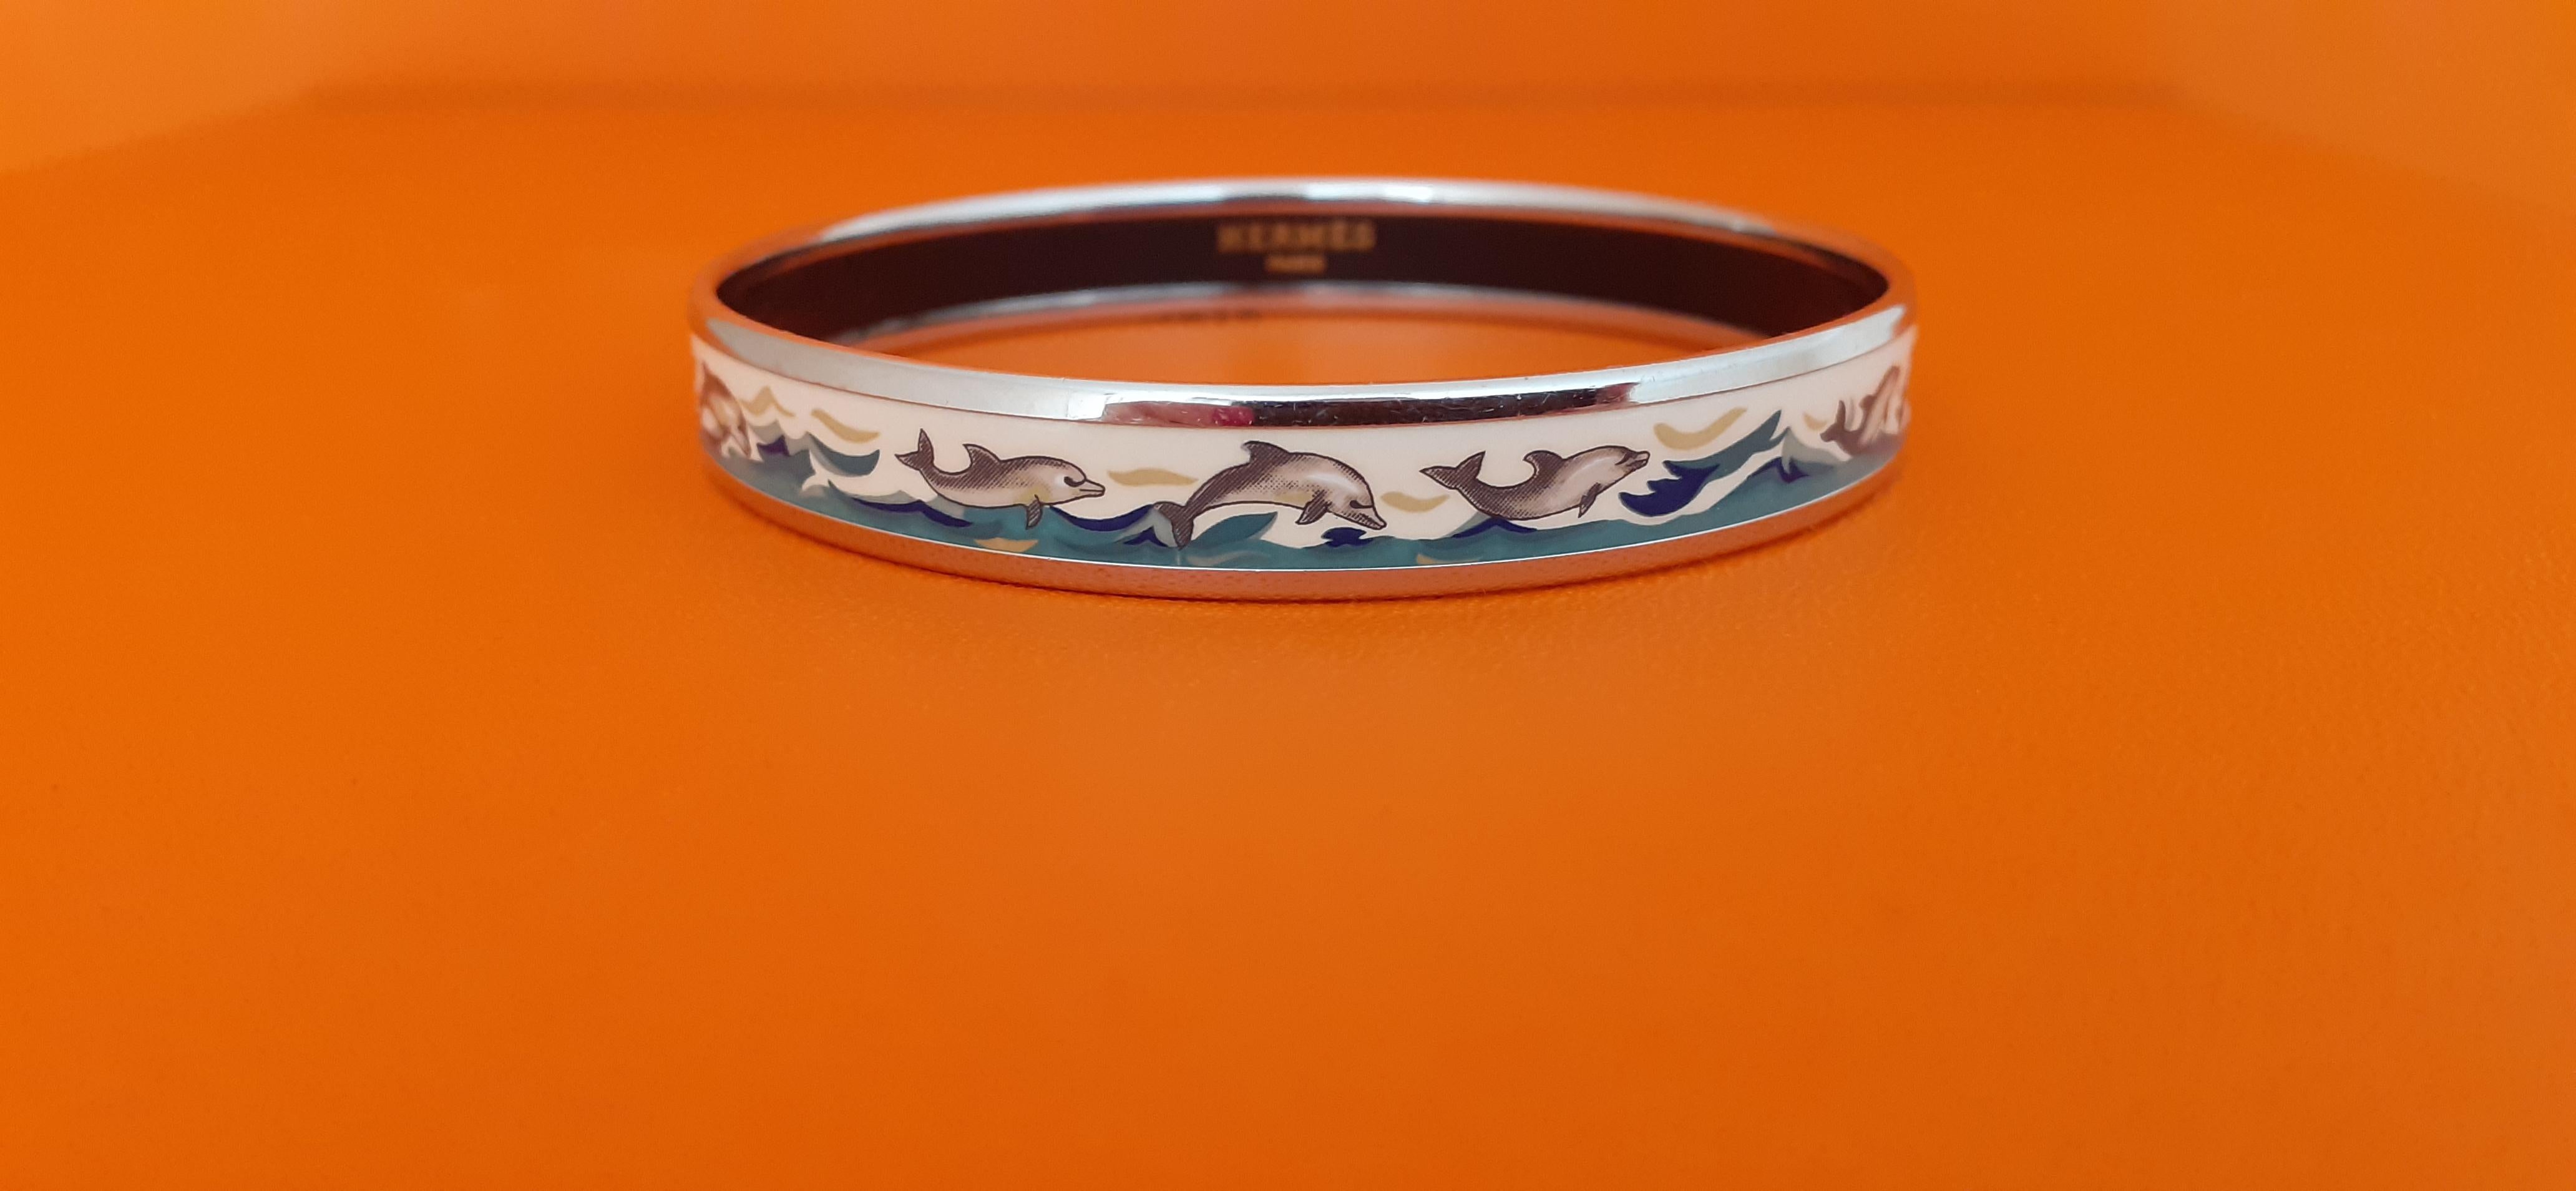 Magnifique bracelet Hermès authentique

Imprimer : Dauphins en mer

